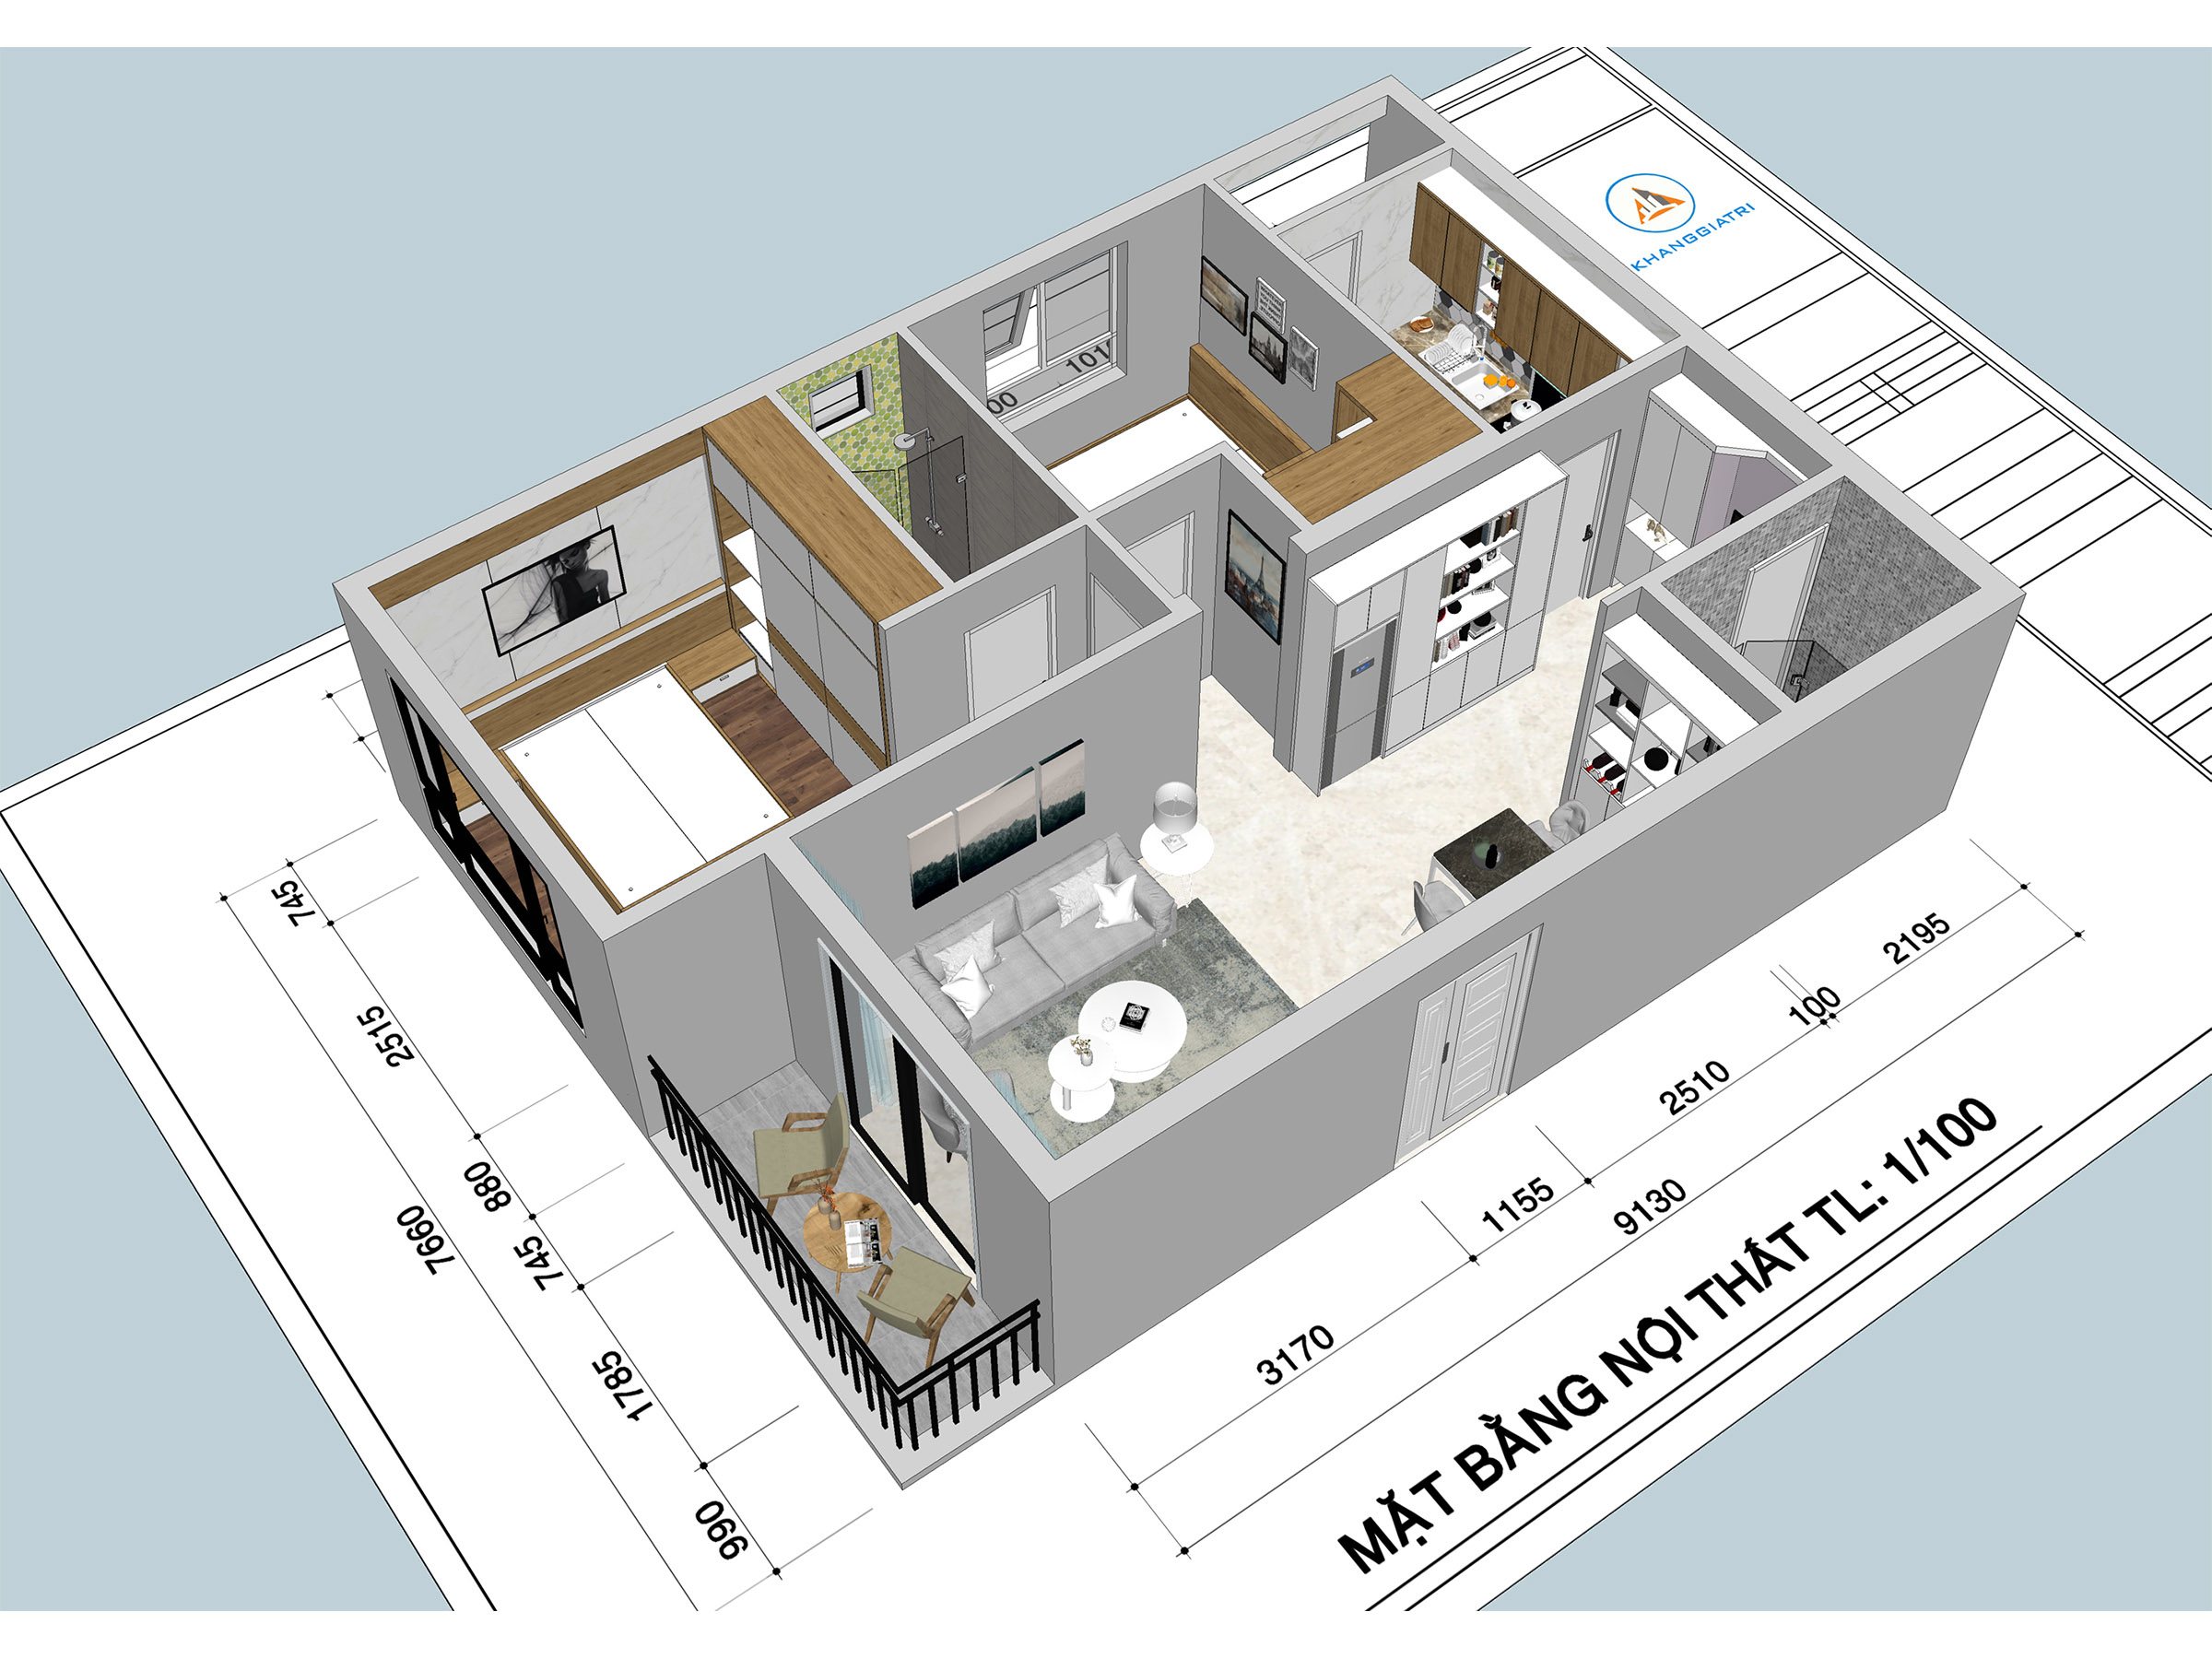 Hướng dẫn vẽ nhà 3d bằng sketchup cho các kiến trúc sư và designer